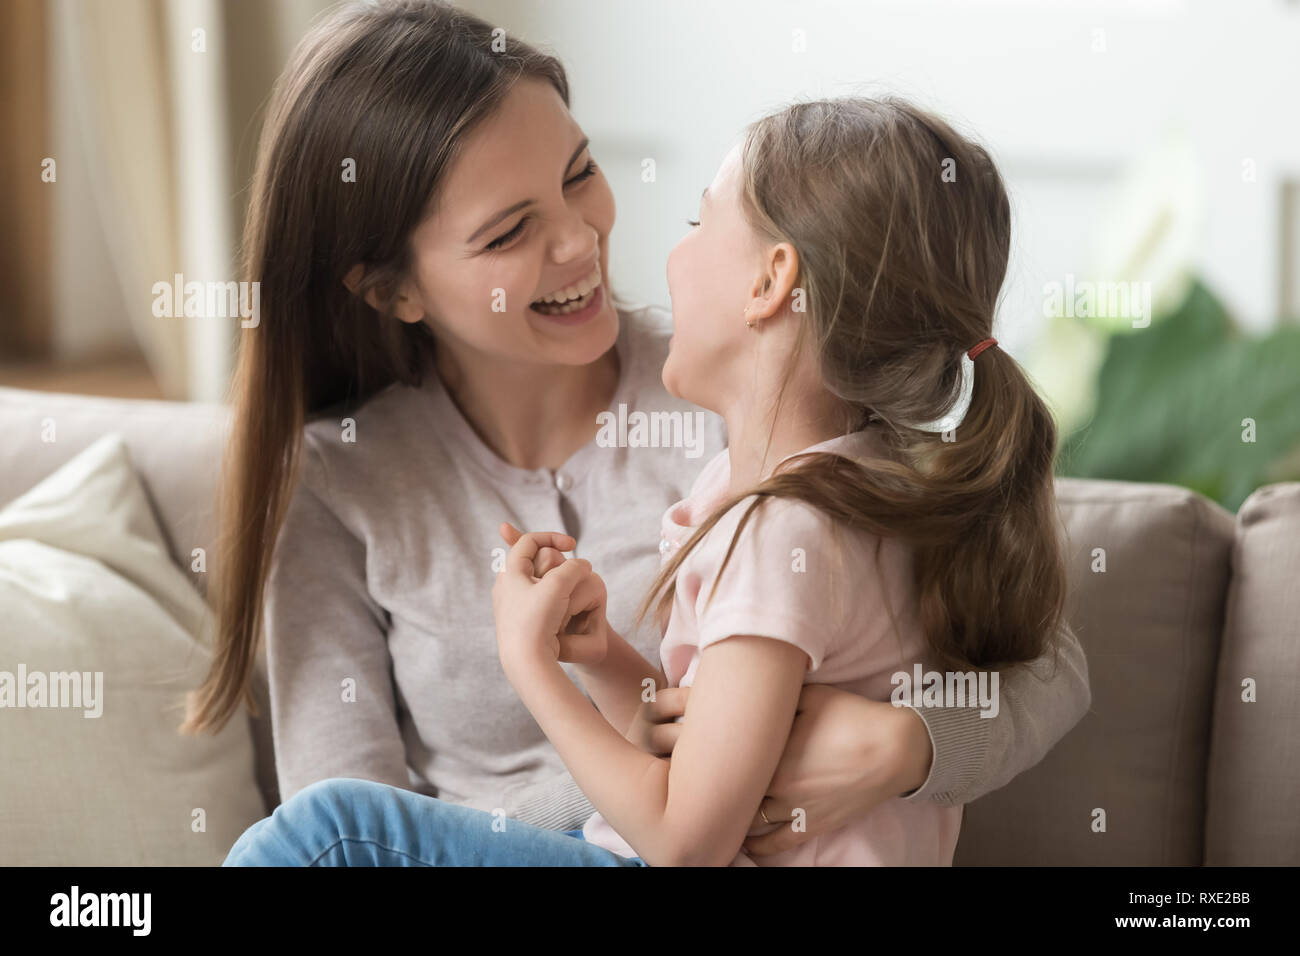 Lächelnd cute kid Mädchen und Mutter Spaß haben gemeinsam lachen Stockfoto